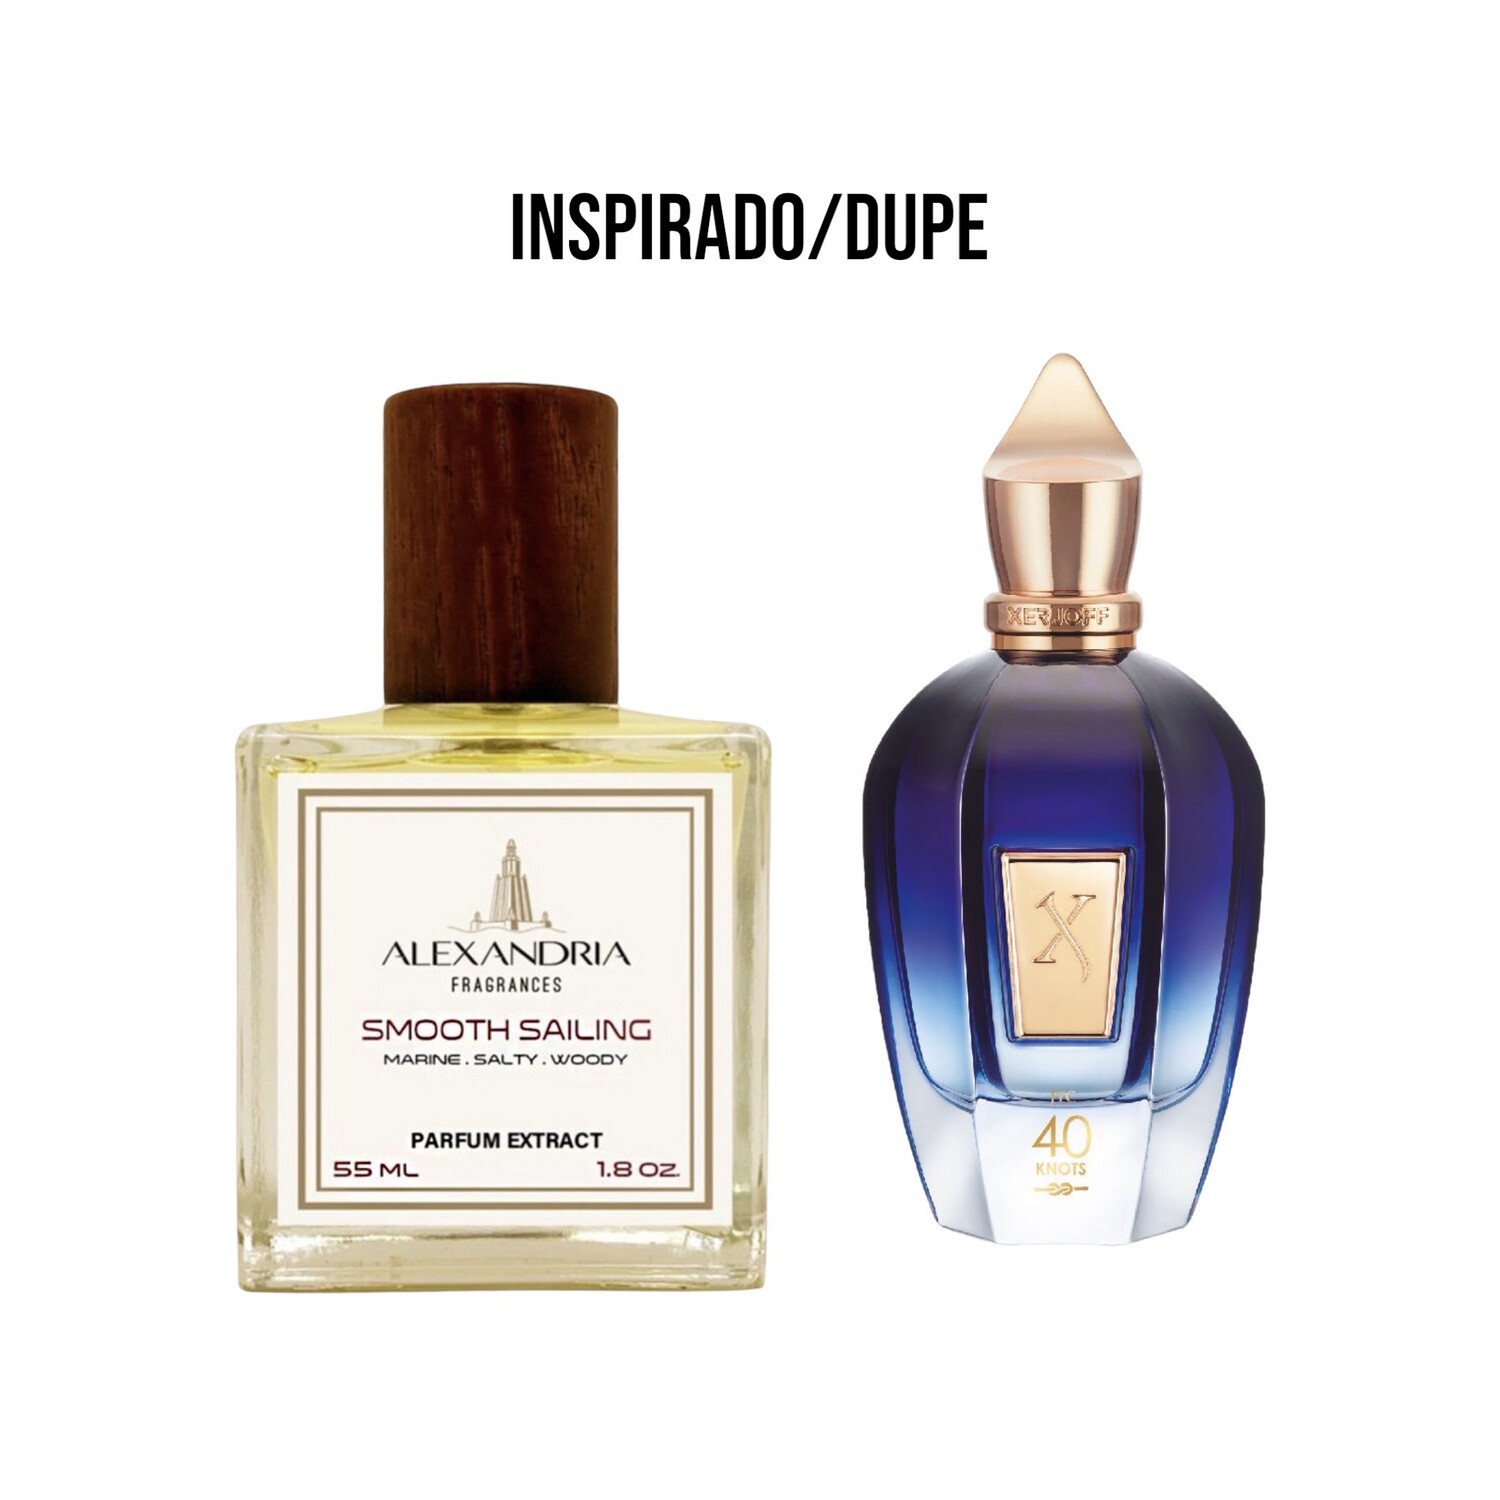 Smooth Sailing Inspirado en Xerjoff 40 Knots 55ML extracto perfume Alexandria Fragrances